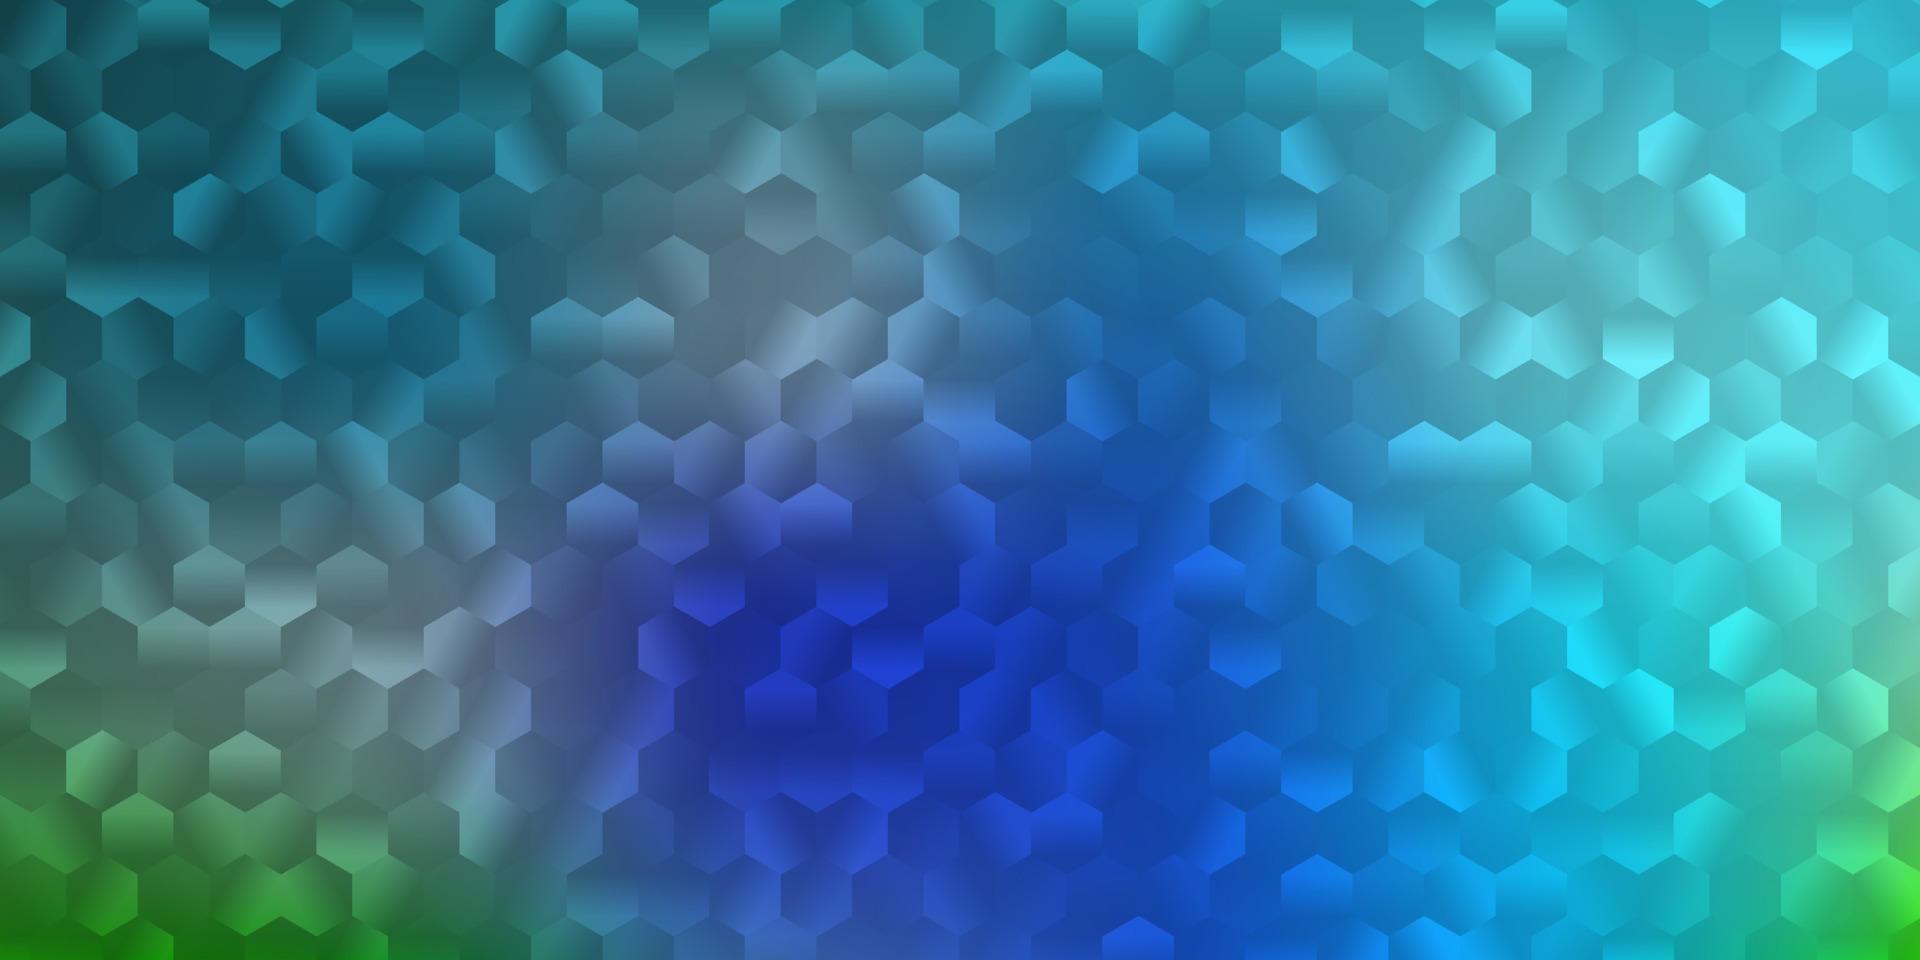 ljusblå, grön vektorlayout med former av hexagoner. vektor